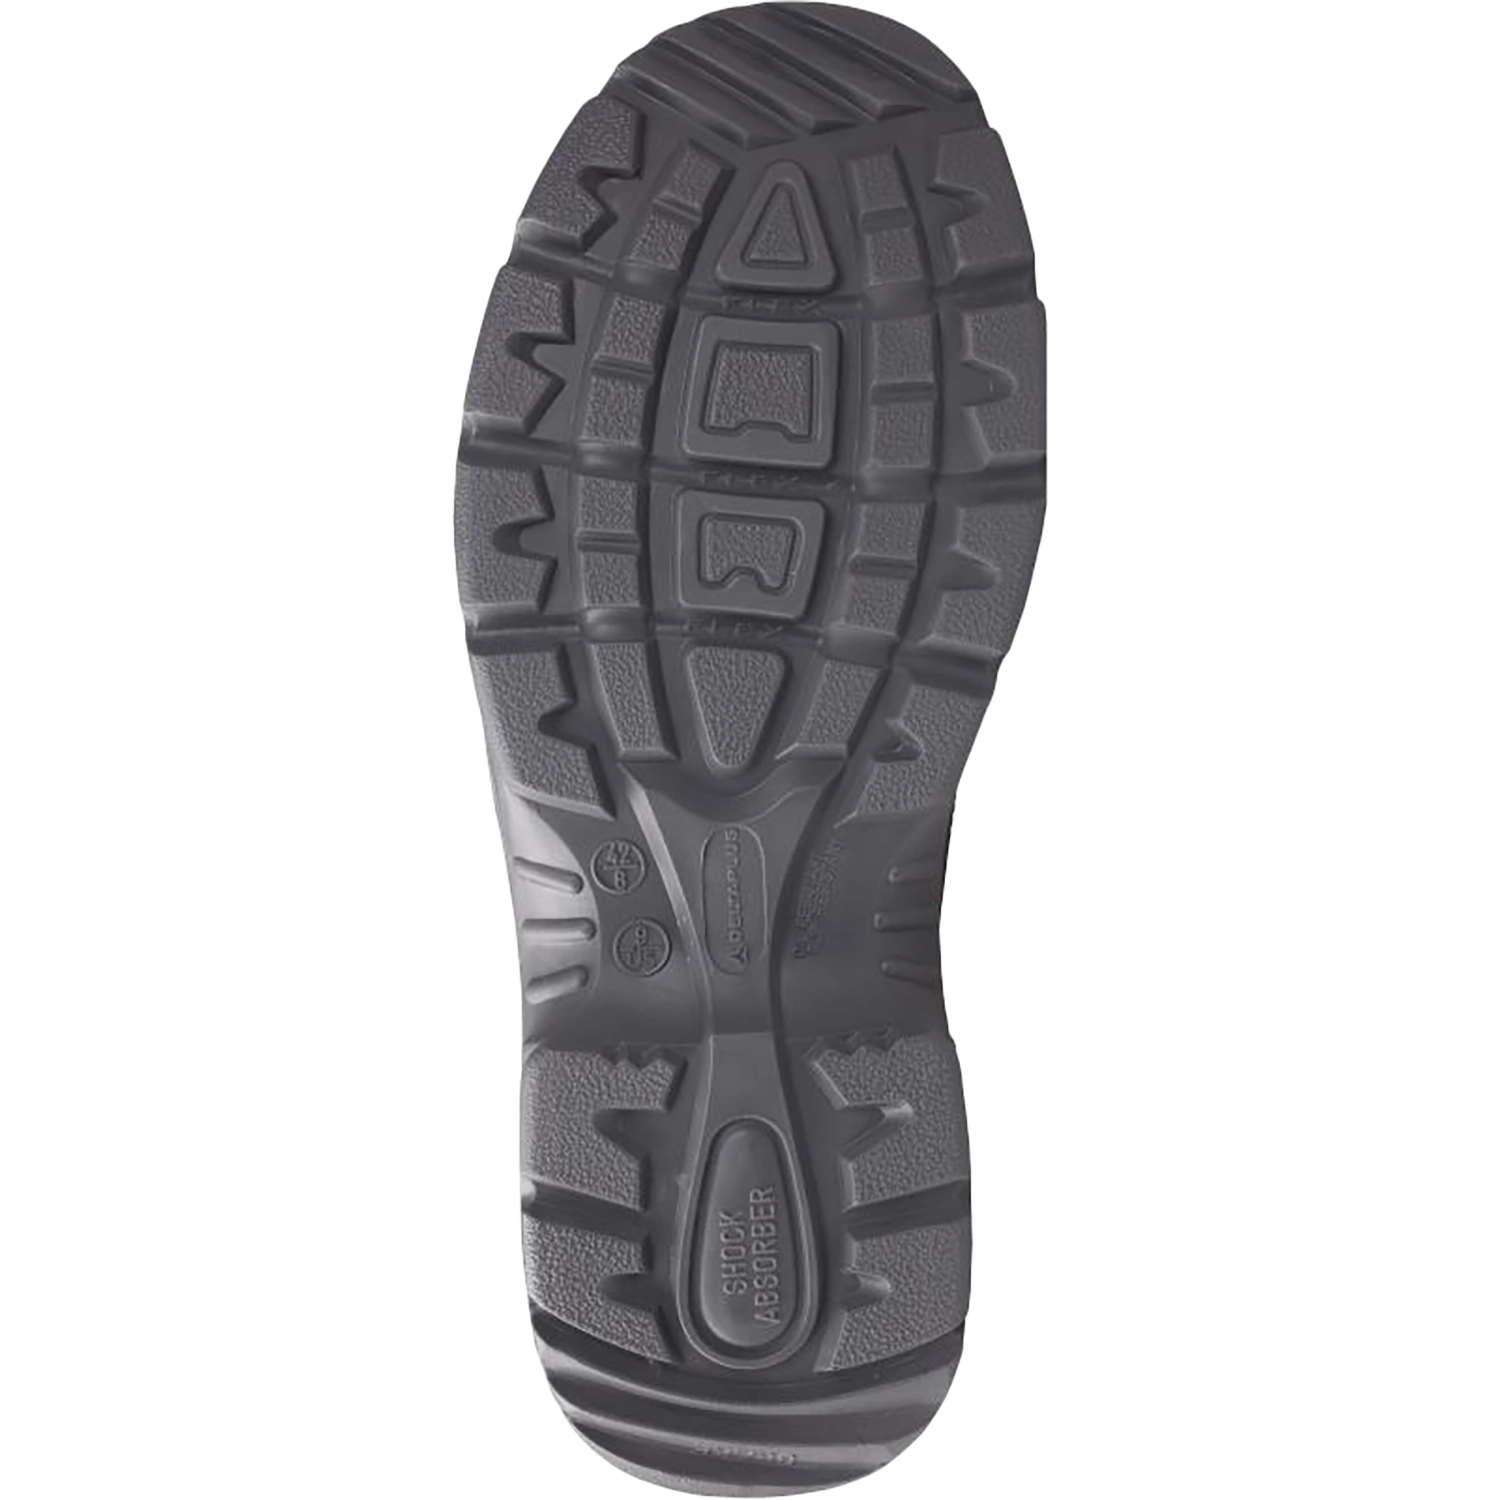 Hoog model schoenen - X-Large  - Sault S3 - zwart - maat 46